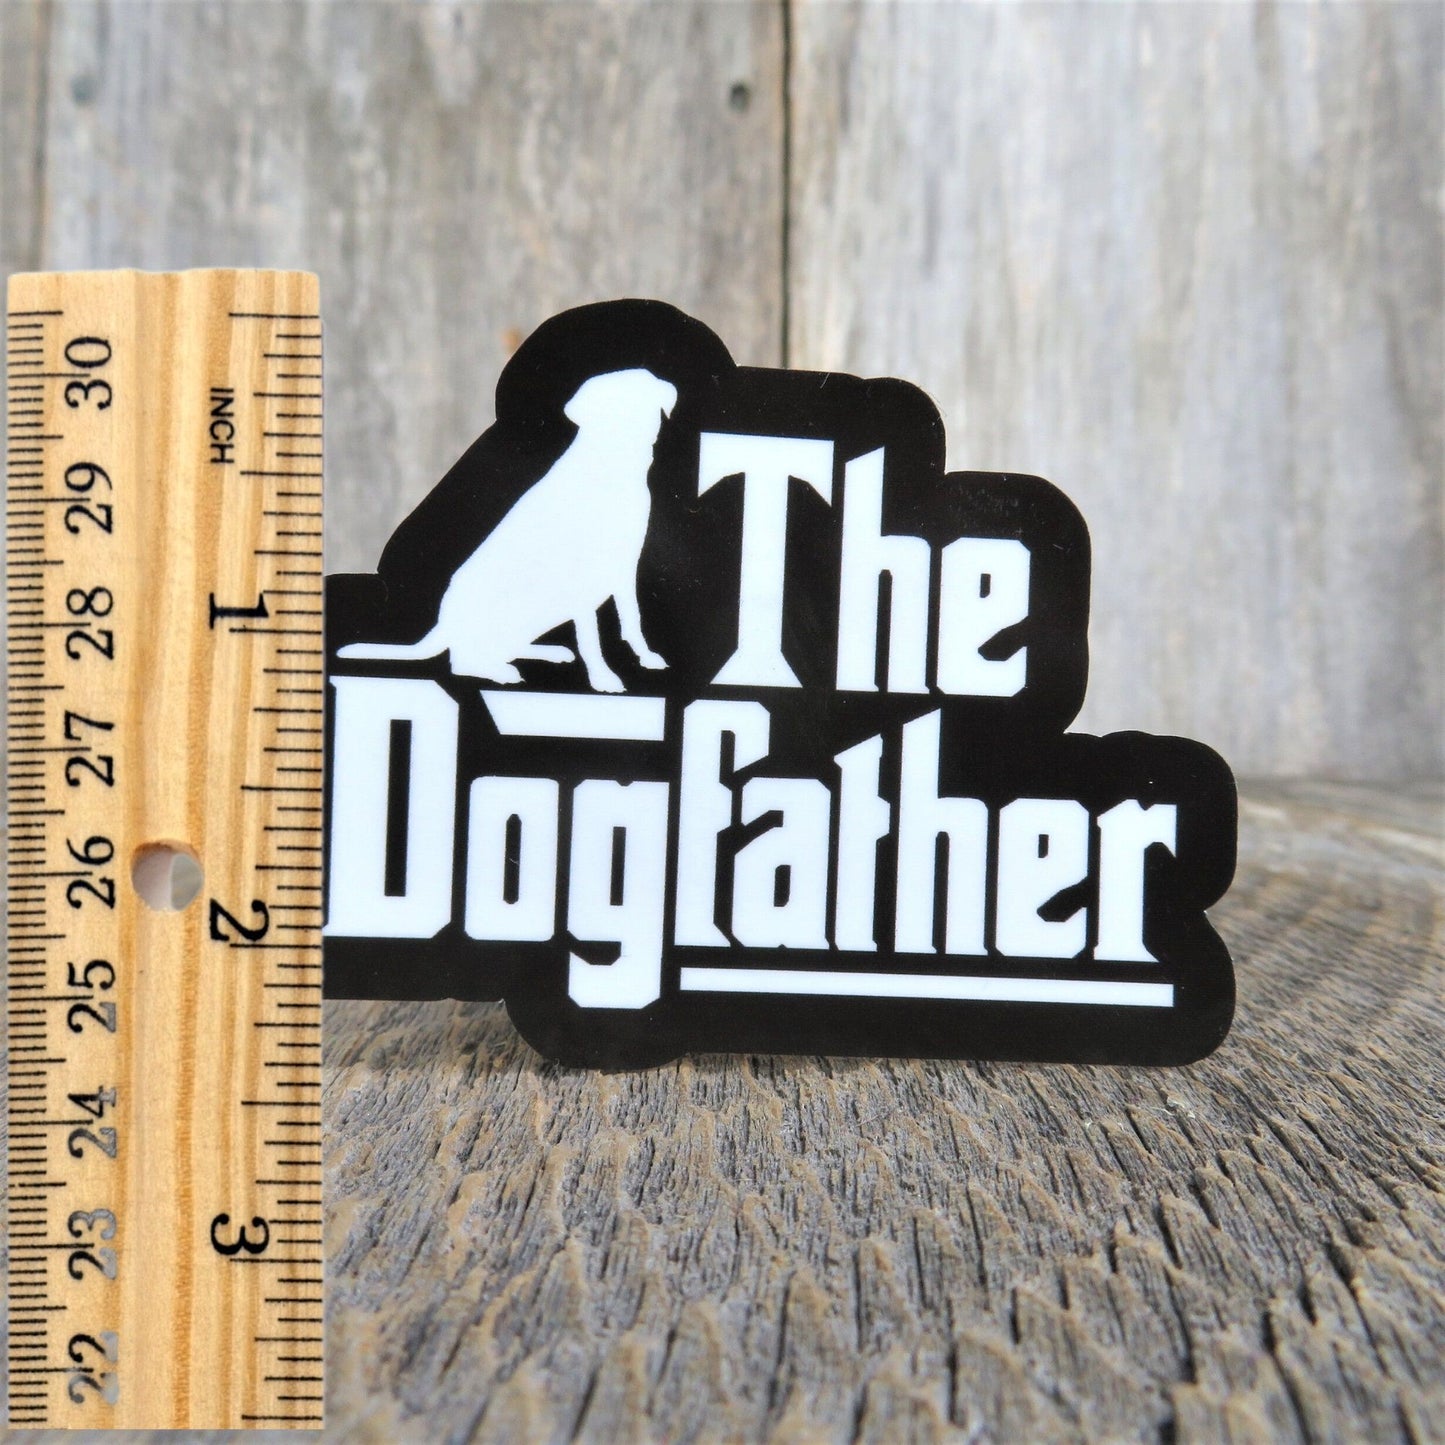 Labrador Golden Retriever Sticker The Dog Father Dog Dad Waterproof Sticker Godfather Lover Black White Water Bottle Laptop